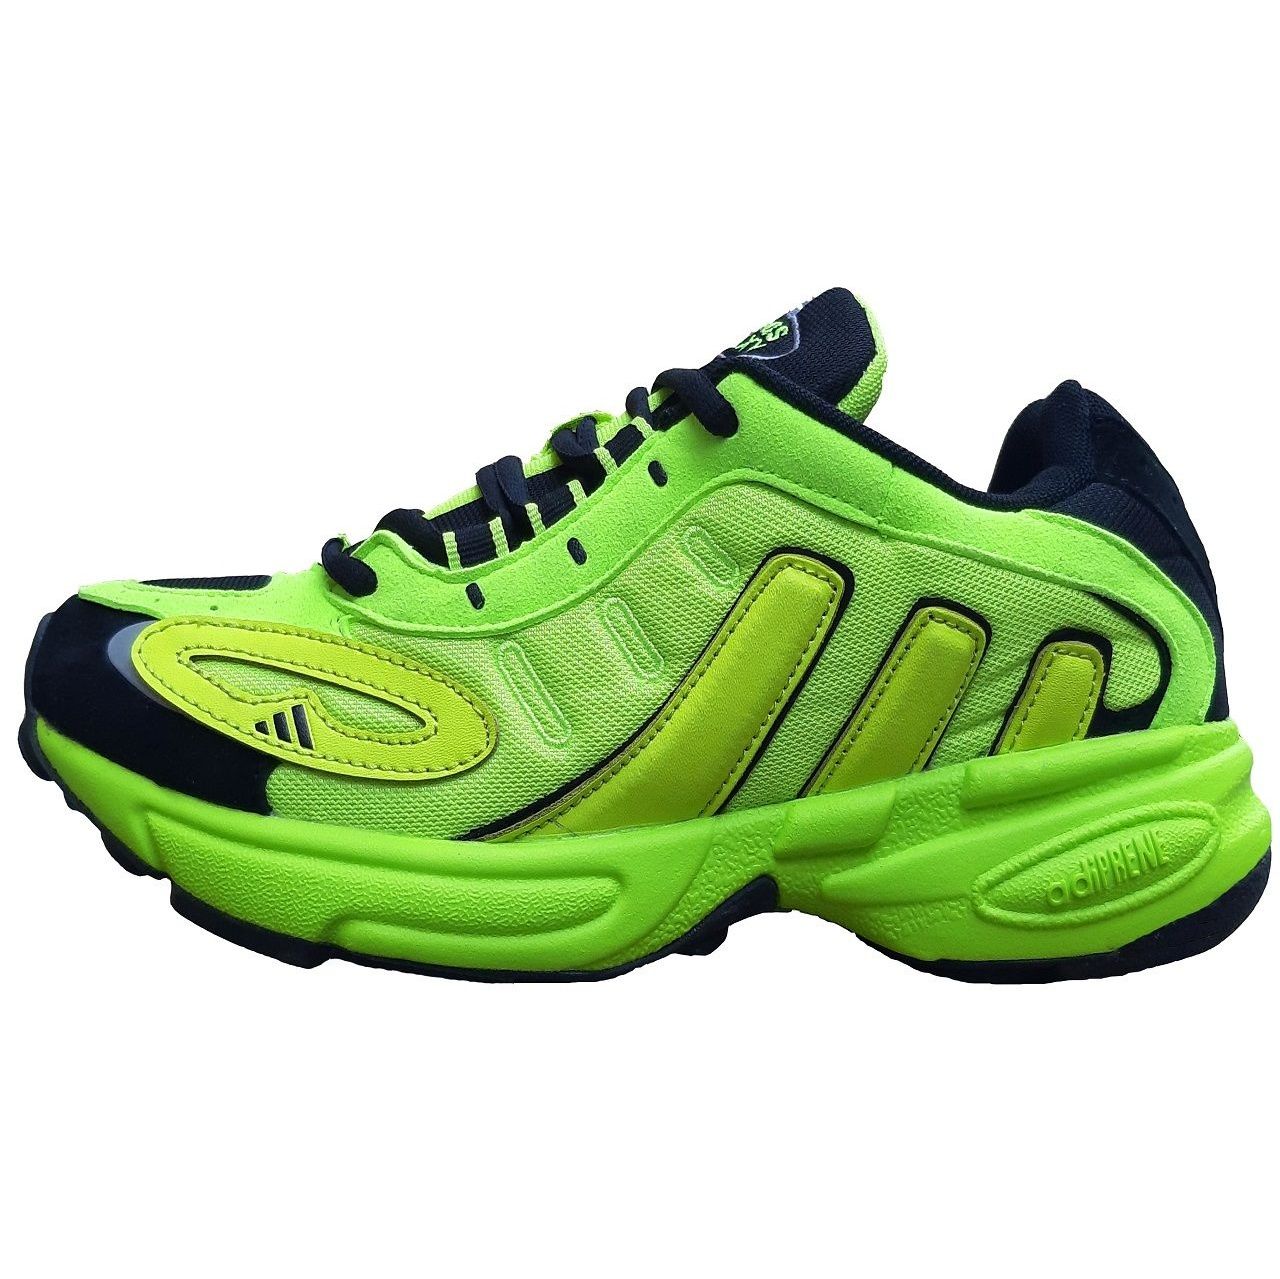 کفش مخصوص پیاده روی مردانه مدل گلکسی کد 217001 رنگ فسفری